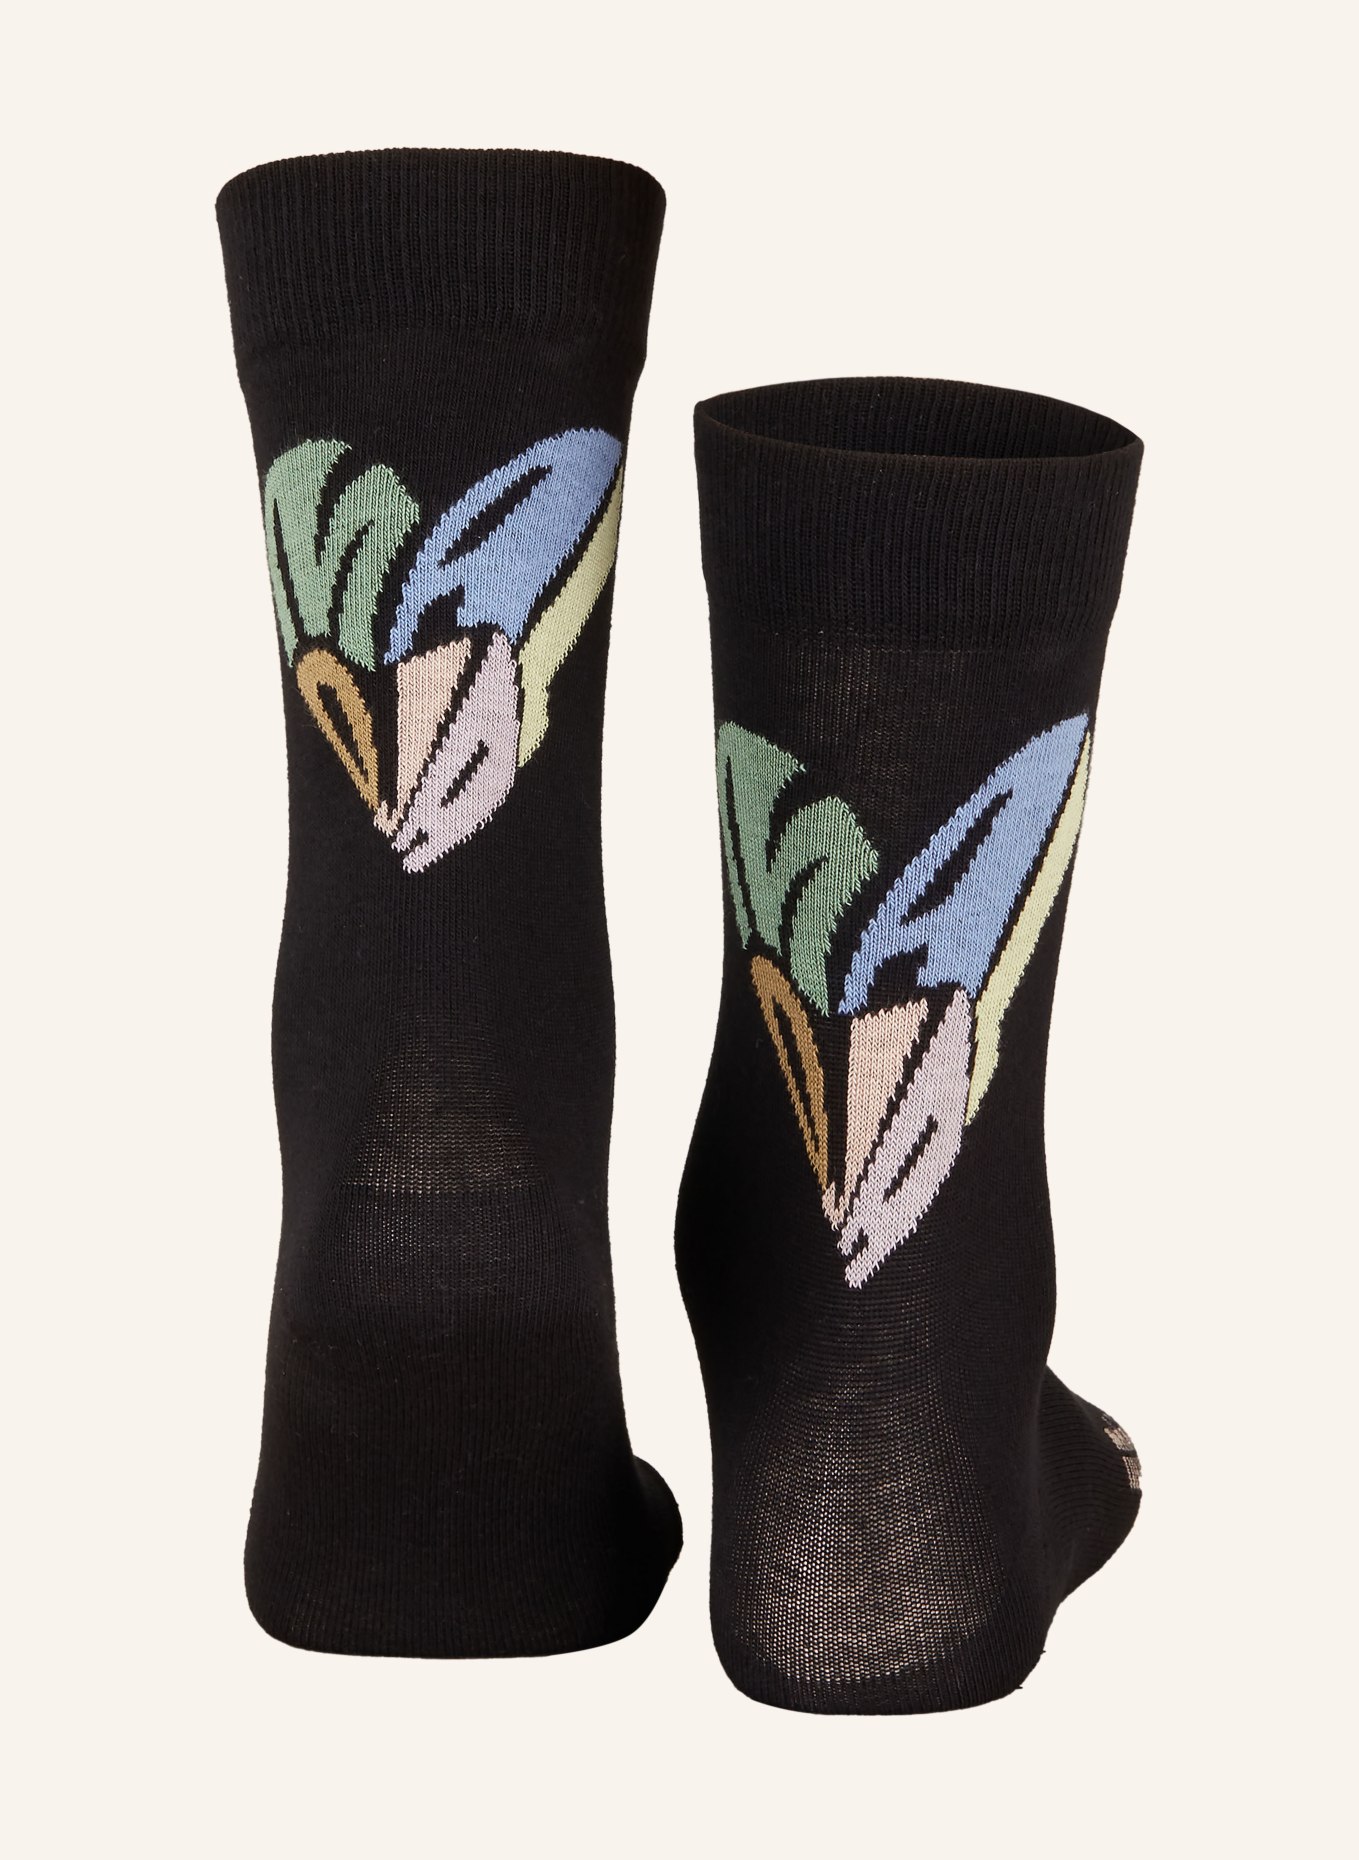 maloja Socks HÄRZLIM., Color: 8833 deep black (Image 2)